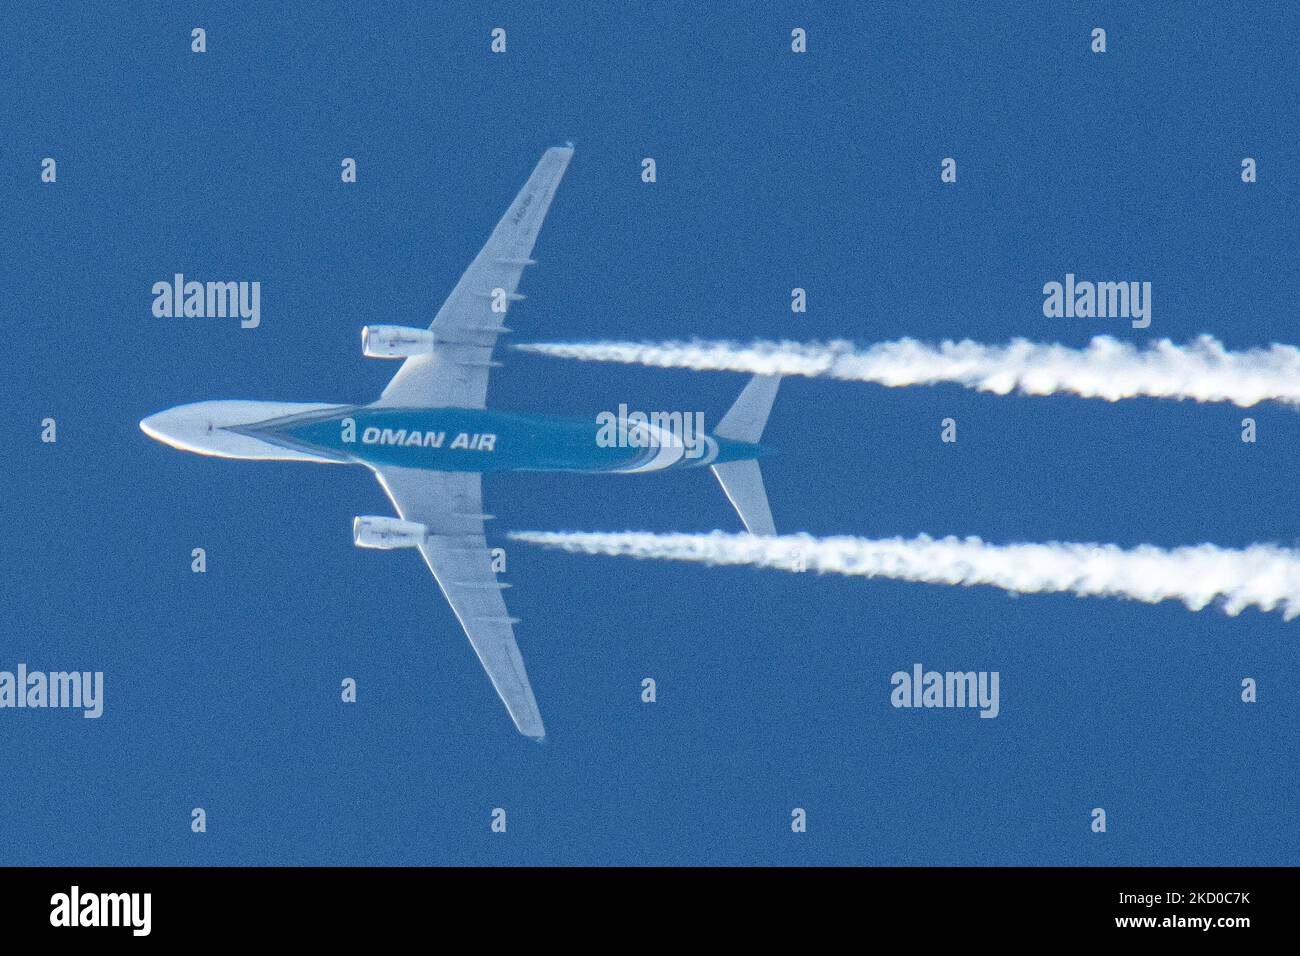 Oman Air Airbus A330-Großraumflugzeuge, wie sie bei einem klaren blauen Himmel an einem 40,000 Fuß langen Tag in der niederländischen Stadt Eindhoven fliegen. Die Fluggesellschaft ist die nationale Fluggesellschaft des Sultanats Oman, einem Land an der südöstlichen Küste der Arabischen Halbinsel. Die OMAN AIR Logo Inschrift am Bauch des blauen Rumpfes des Überflugzeugs ist sichtbar. Das überfliegende Flugzeug fährt von der Hauptstadt Muscat nach London und hinterlässt einen weißen Kondensstreifen, der als Kondensstreifen bekannt ist. Die Luftfahrtindustrie und der Personenverkehr stehen mit dem Coronavirus pa Covid-19 in einer schwierigen Phase Stockfoto